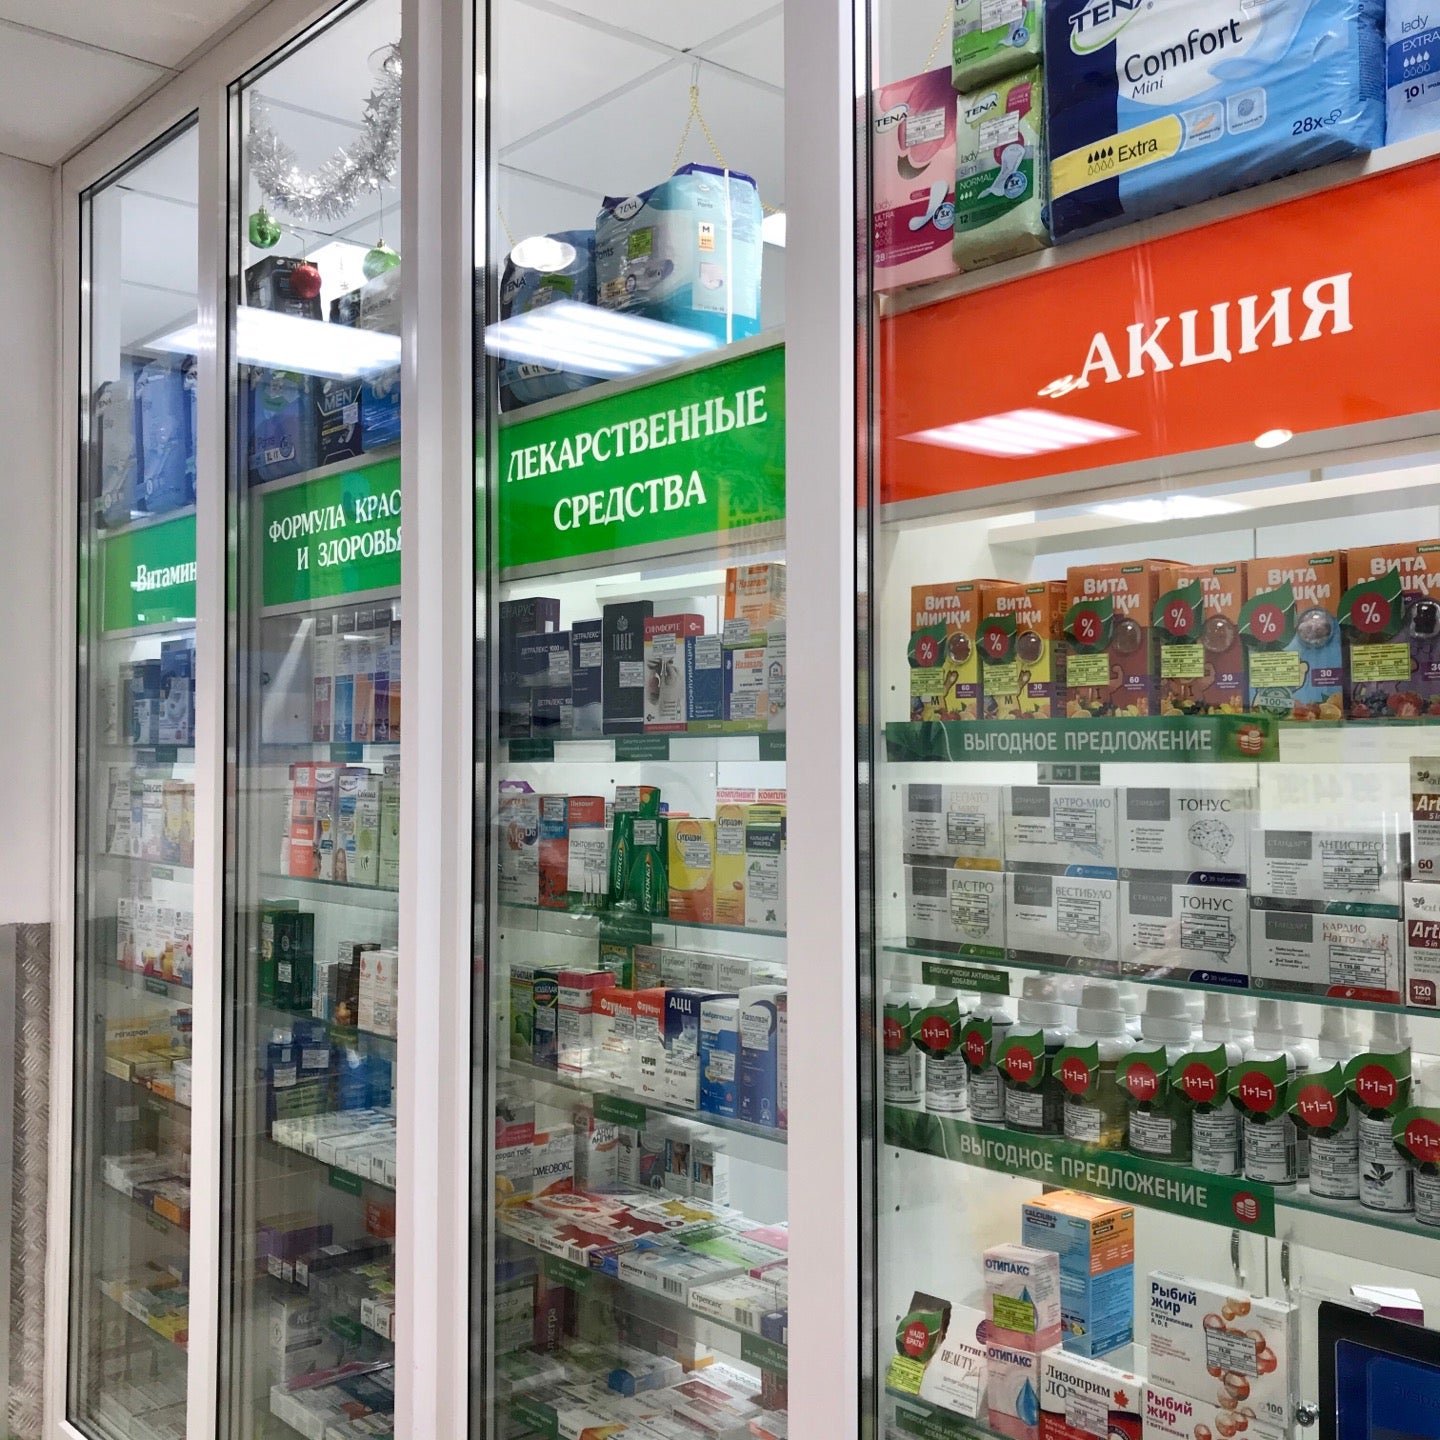 Фунгадерил цена в аптеке. Аптека Санкт-Петербург. Лесная 4 аптека. Купить лекарство в аптеках Санкт-Петербурга. Купить лекарства в аптеках СПБ.